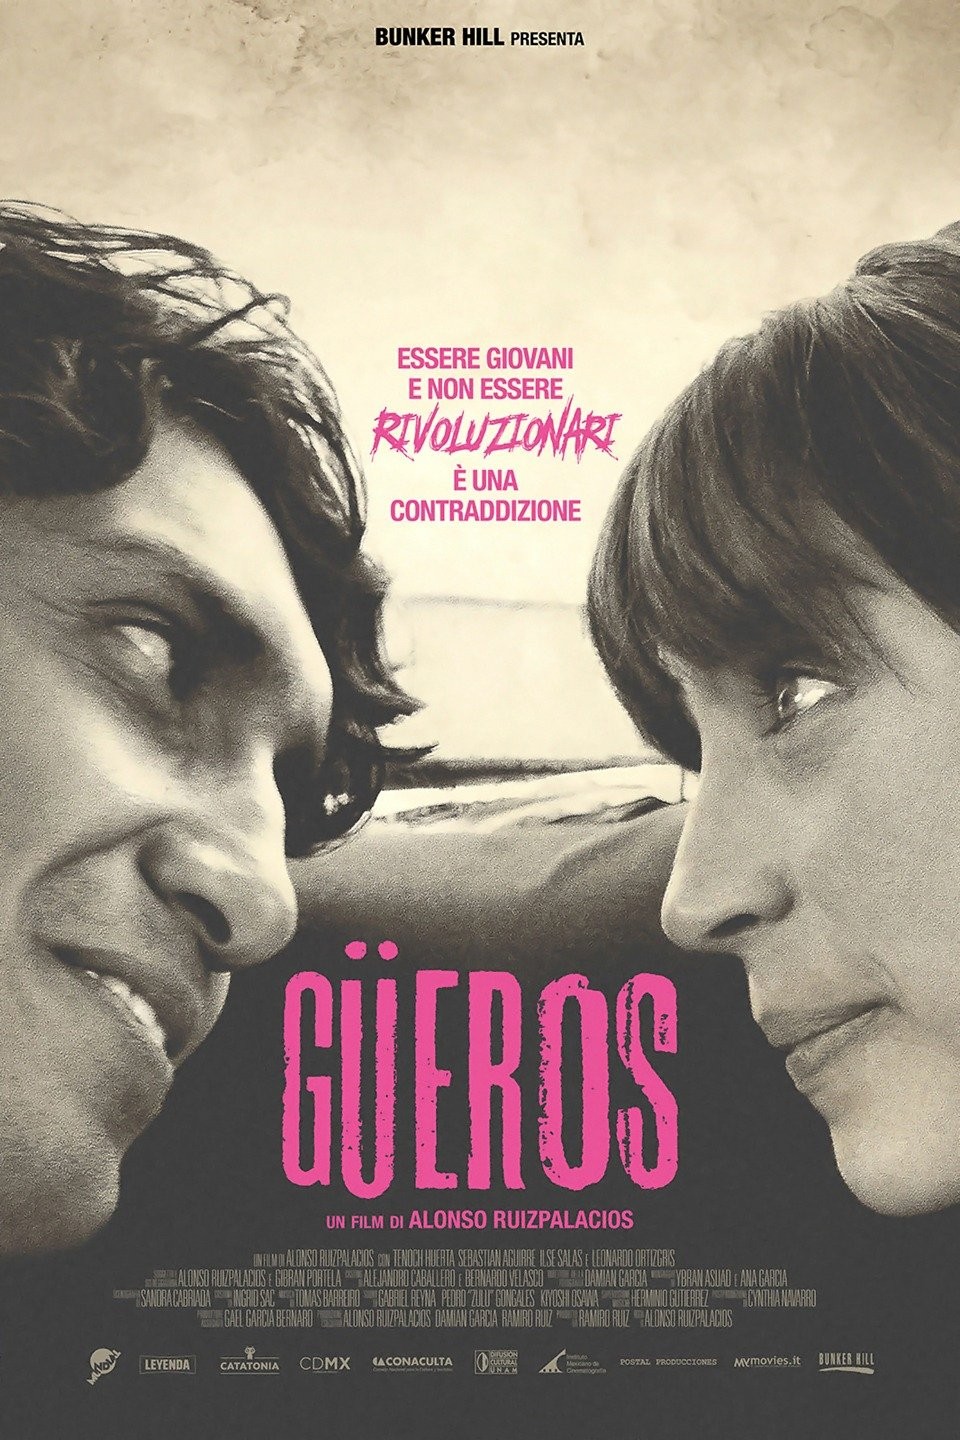 Gueros (2014) - News - IMDb